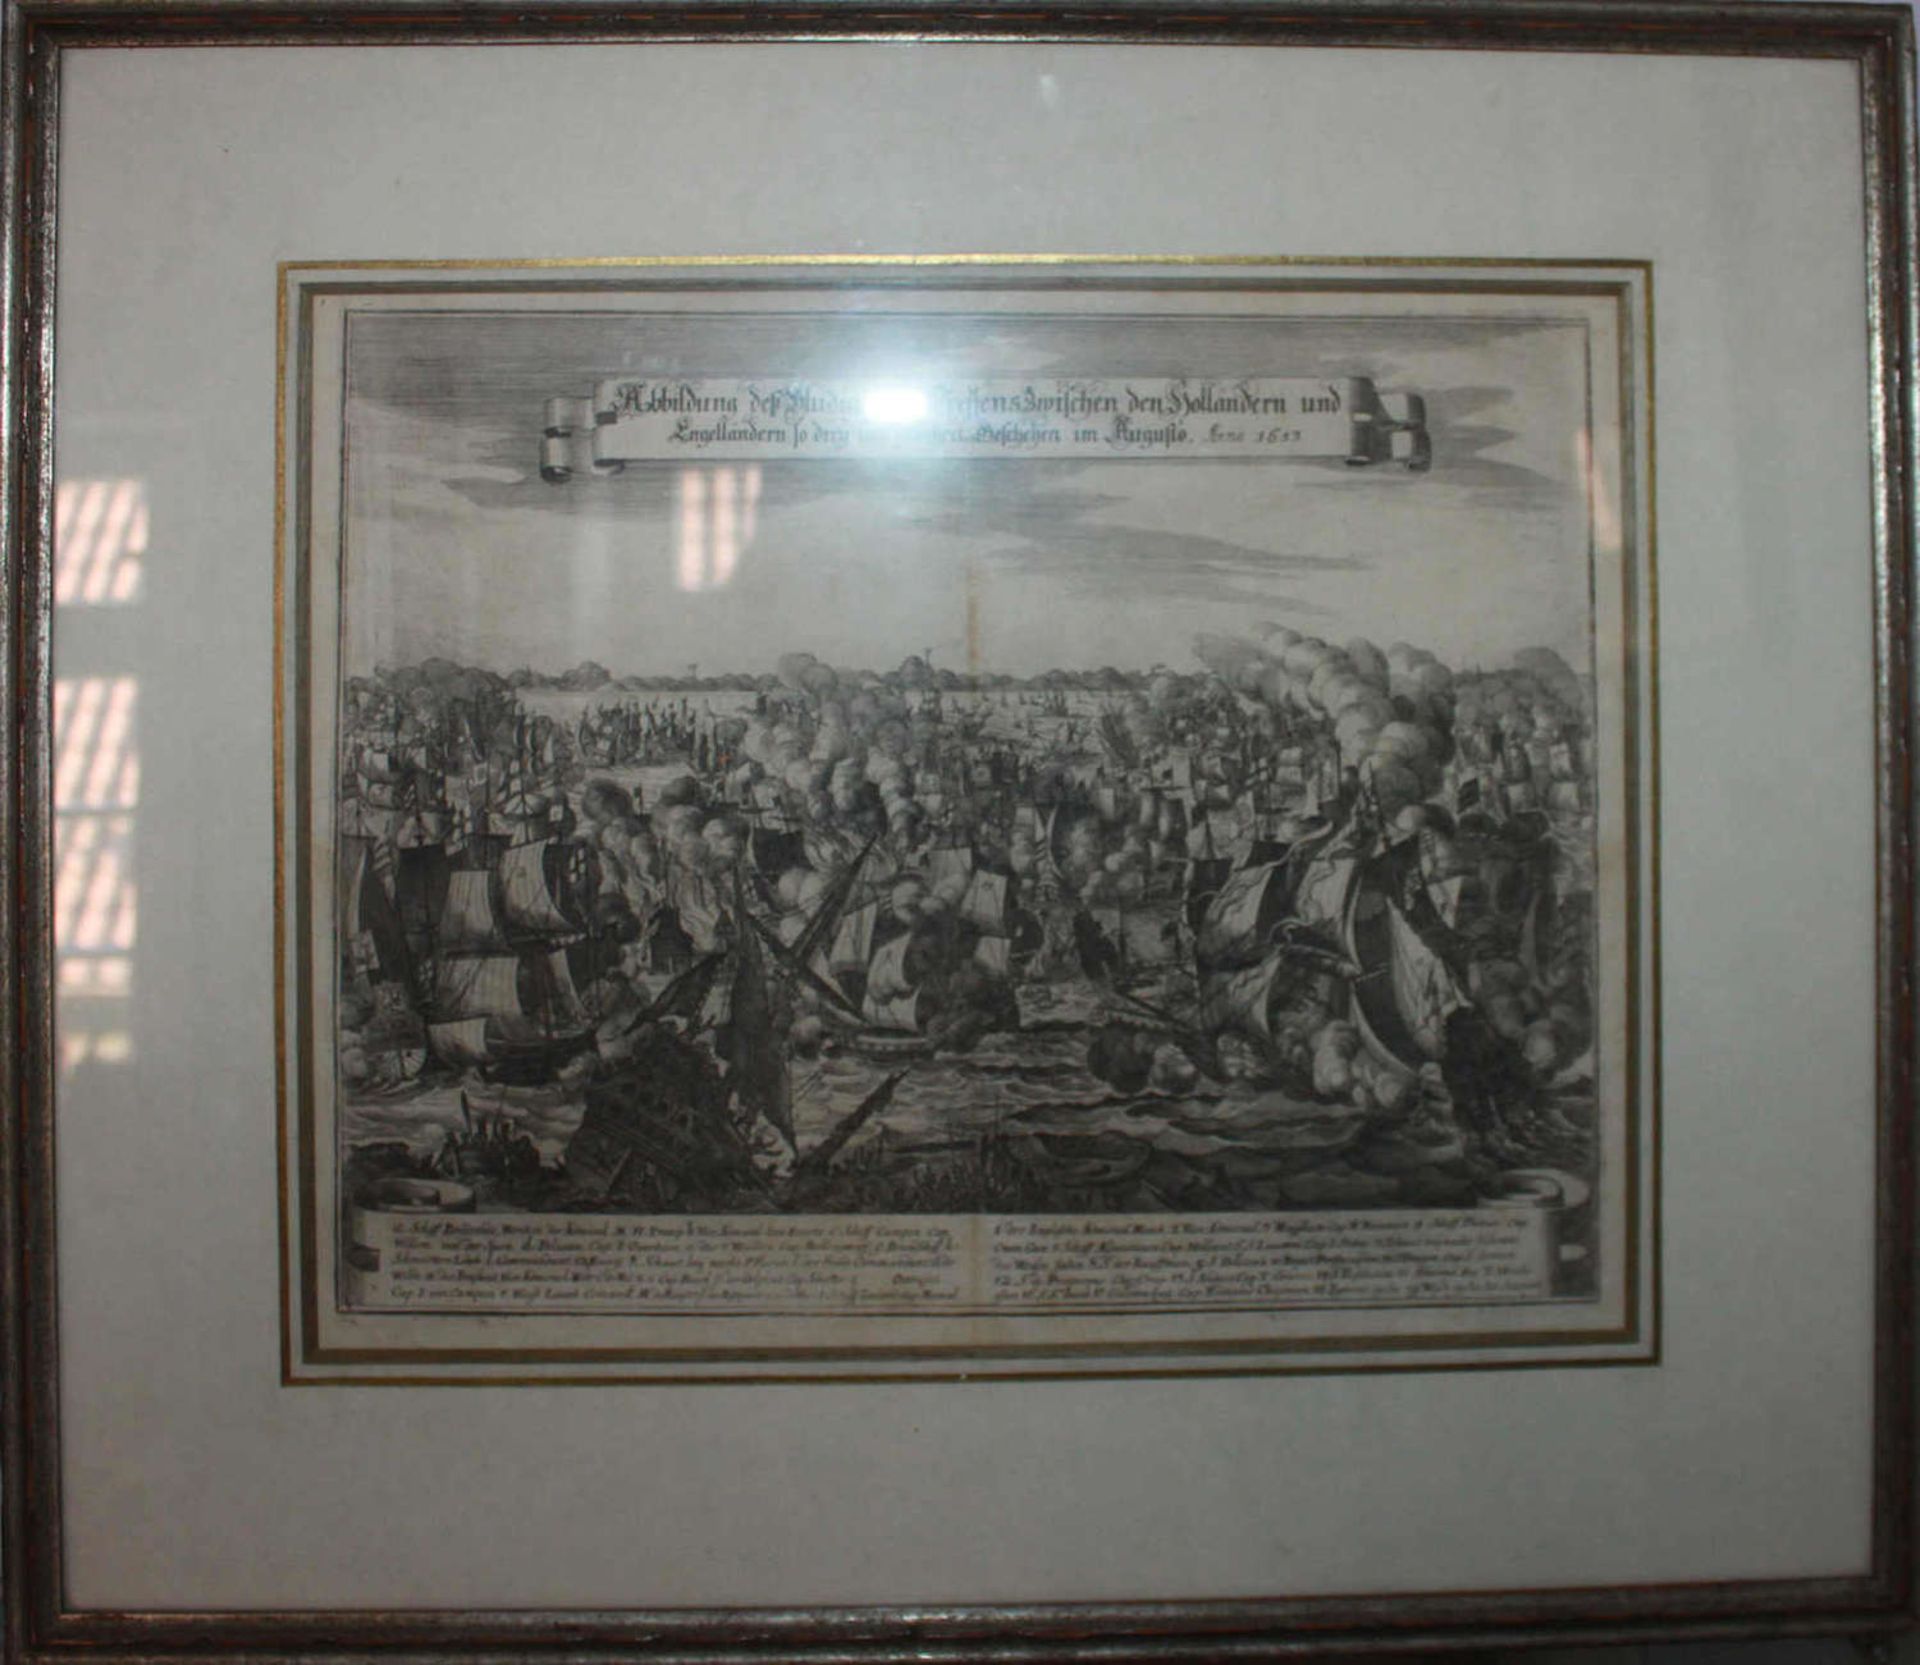 alter Stahlstich von Kasper Merian geb. 1627, gest. 1686, Abbildung des huldigen Seetreffens